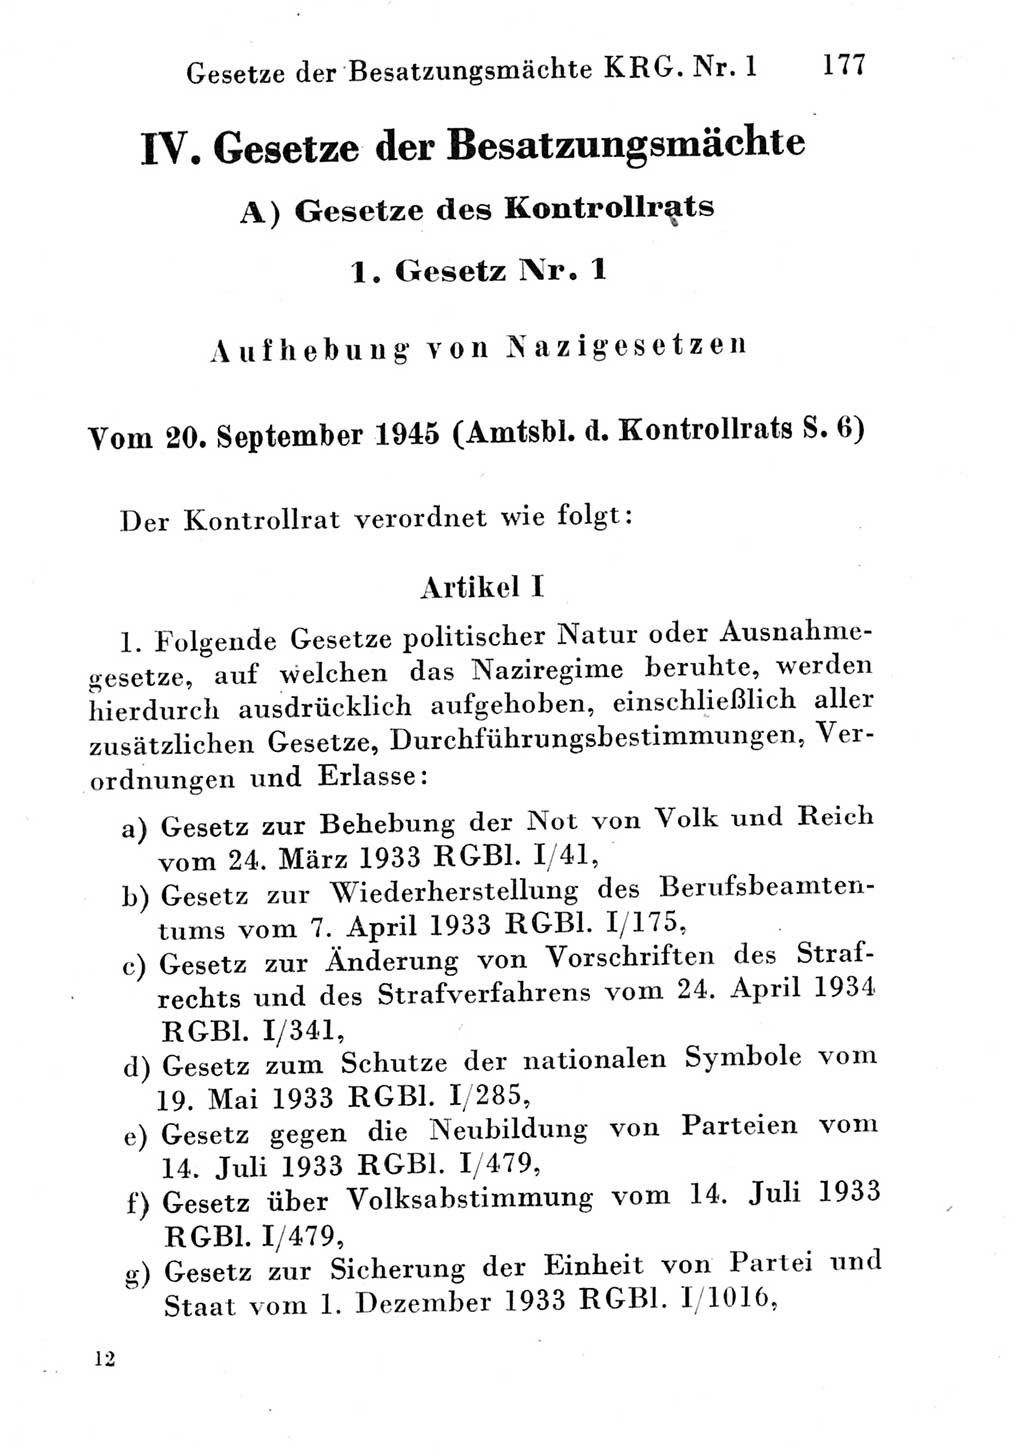 Strafgesetzbuch (StGB) und andere Strafgesetze [Deutsche Demokratische Republik (DDR)] 1951, Seite 177 (StGB Strafges. DDR 1951, S. 177)